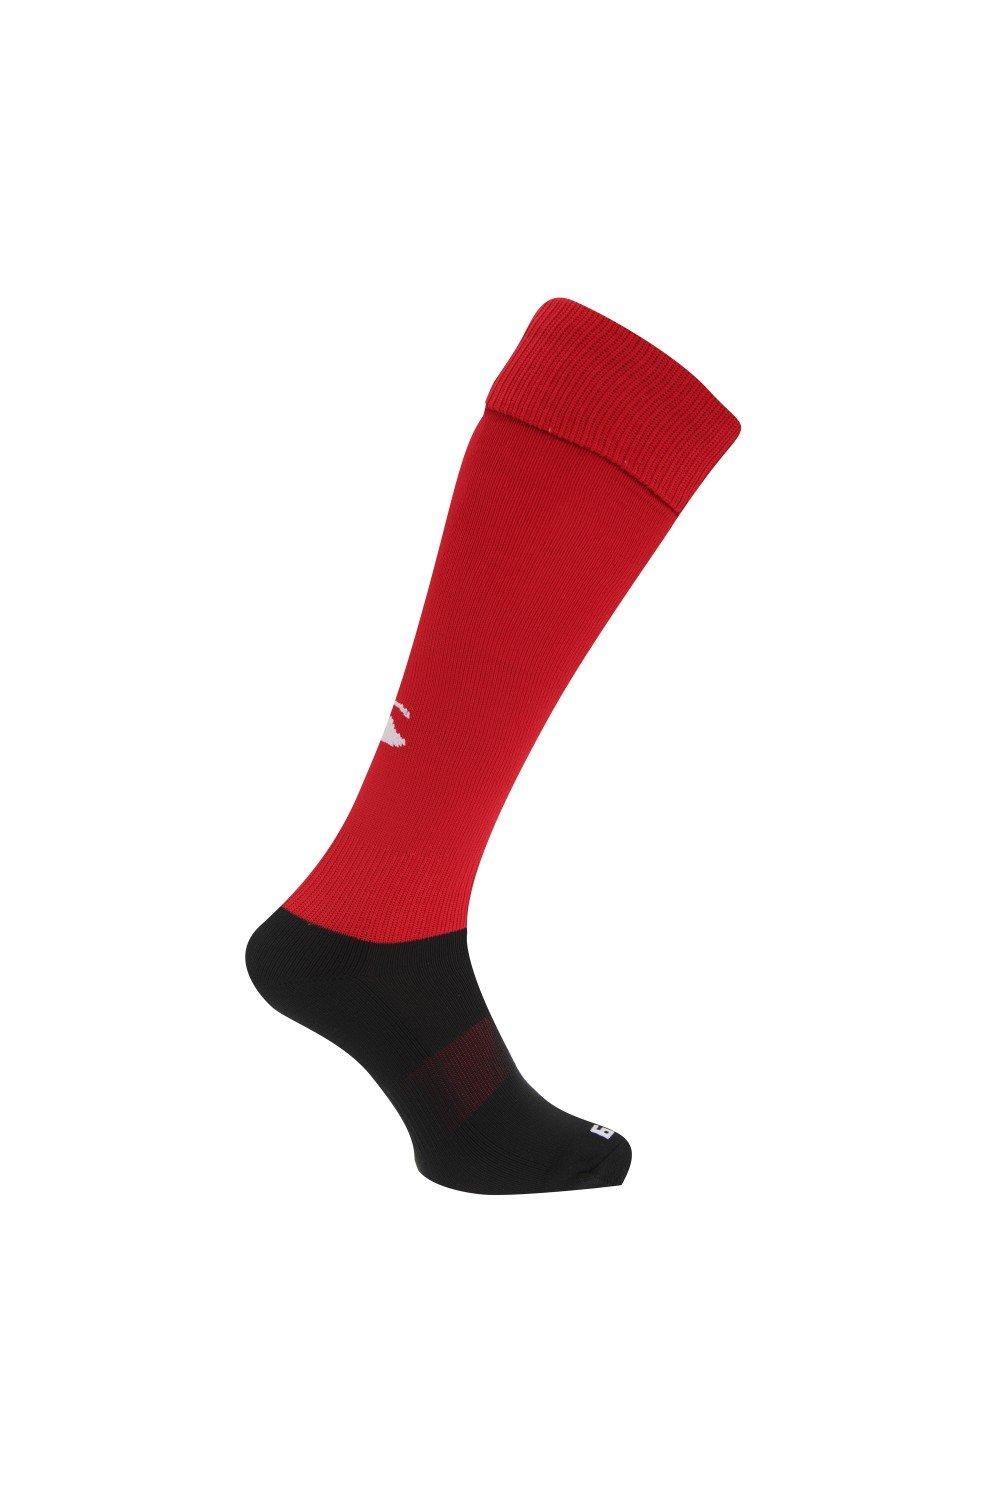 Спортивные носки для игры в регби Canterbury, красный спортивные брюки overcome с контрастными деталями